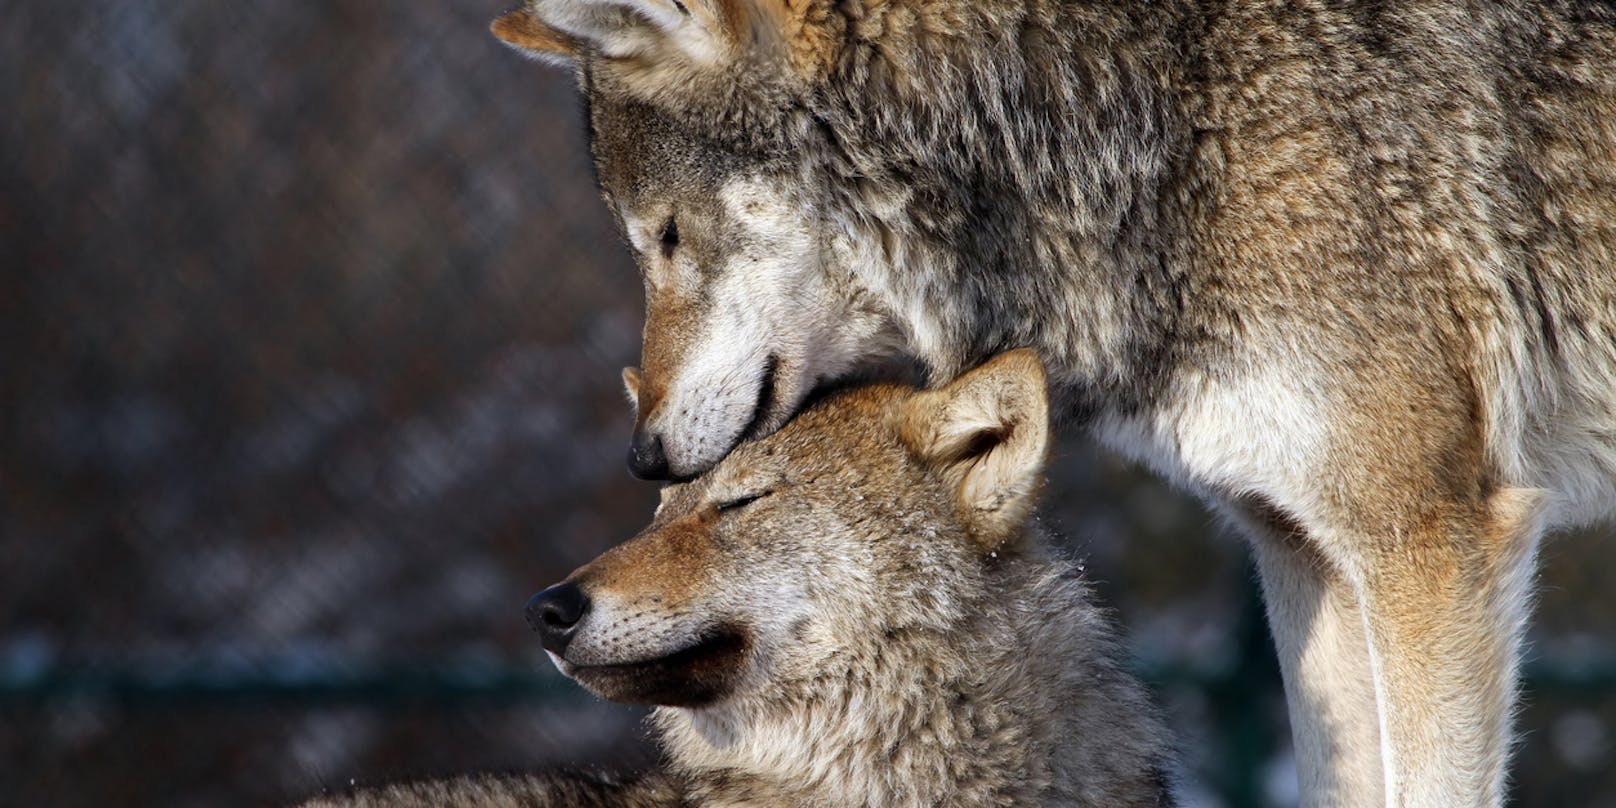 Vor 100 Jahren wurden Wölfe in Österreich ausgerottet. Heute sind sie europaweit streng geschützt und kehren auf natürliche Weise langsam wieder in den Alpenraum zurück. Lediglich 30 bis 35 Individuen gibt es in Österreich. Doch obwohl von der Art keine Gefahr für den Menschen ausgeht und Nutztiere durch Zäune oder Hunde geschützt werden können, wollen ihr manche erneut an den Kragen. Im letzten Jahr wurde ein Wolf in Tirol illegal geschossen und sogar enthauptet aufgefunden. In Niederösterreich ist ein ganzes Rudel verschwunden.